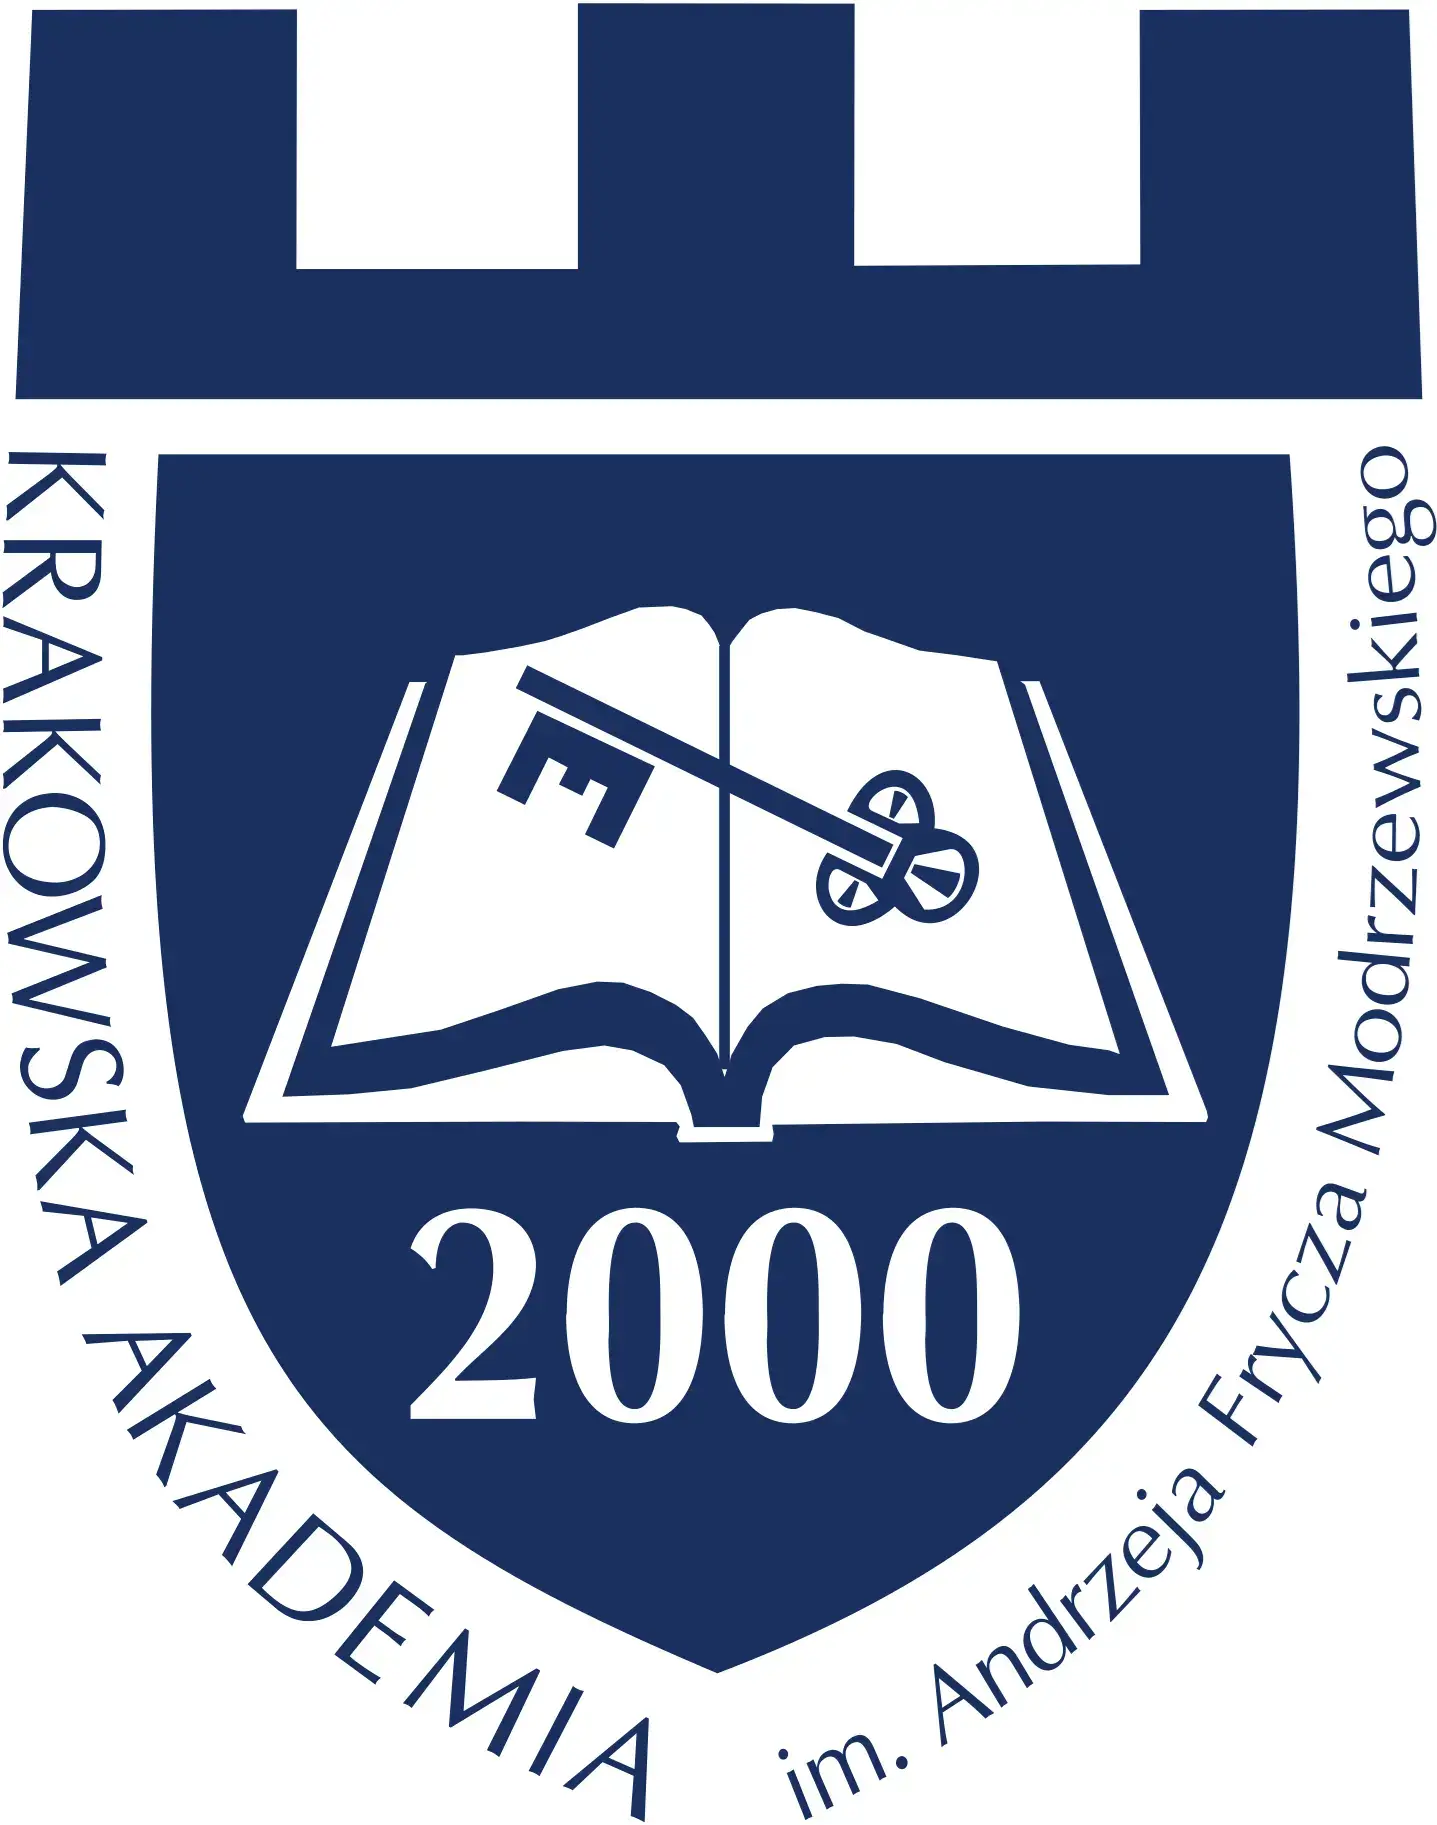 Andrzej Frycz Modrzewski University